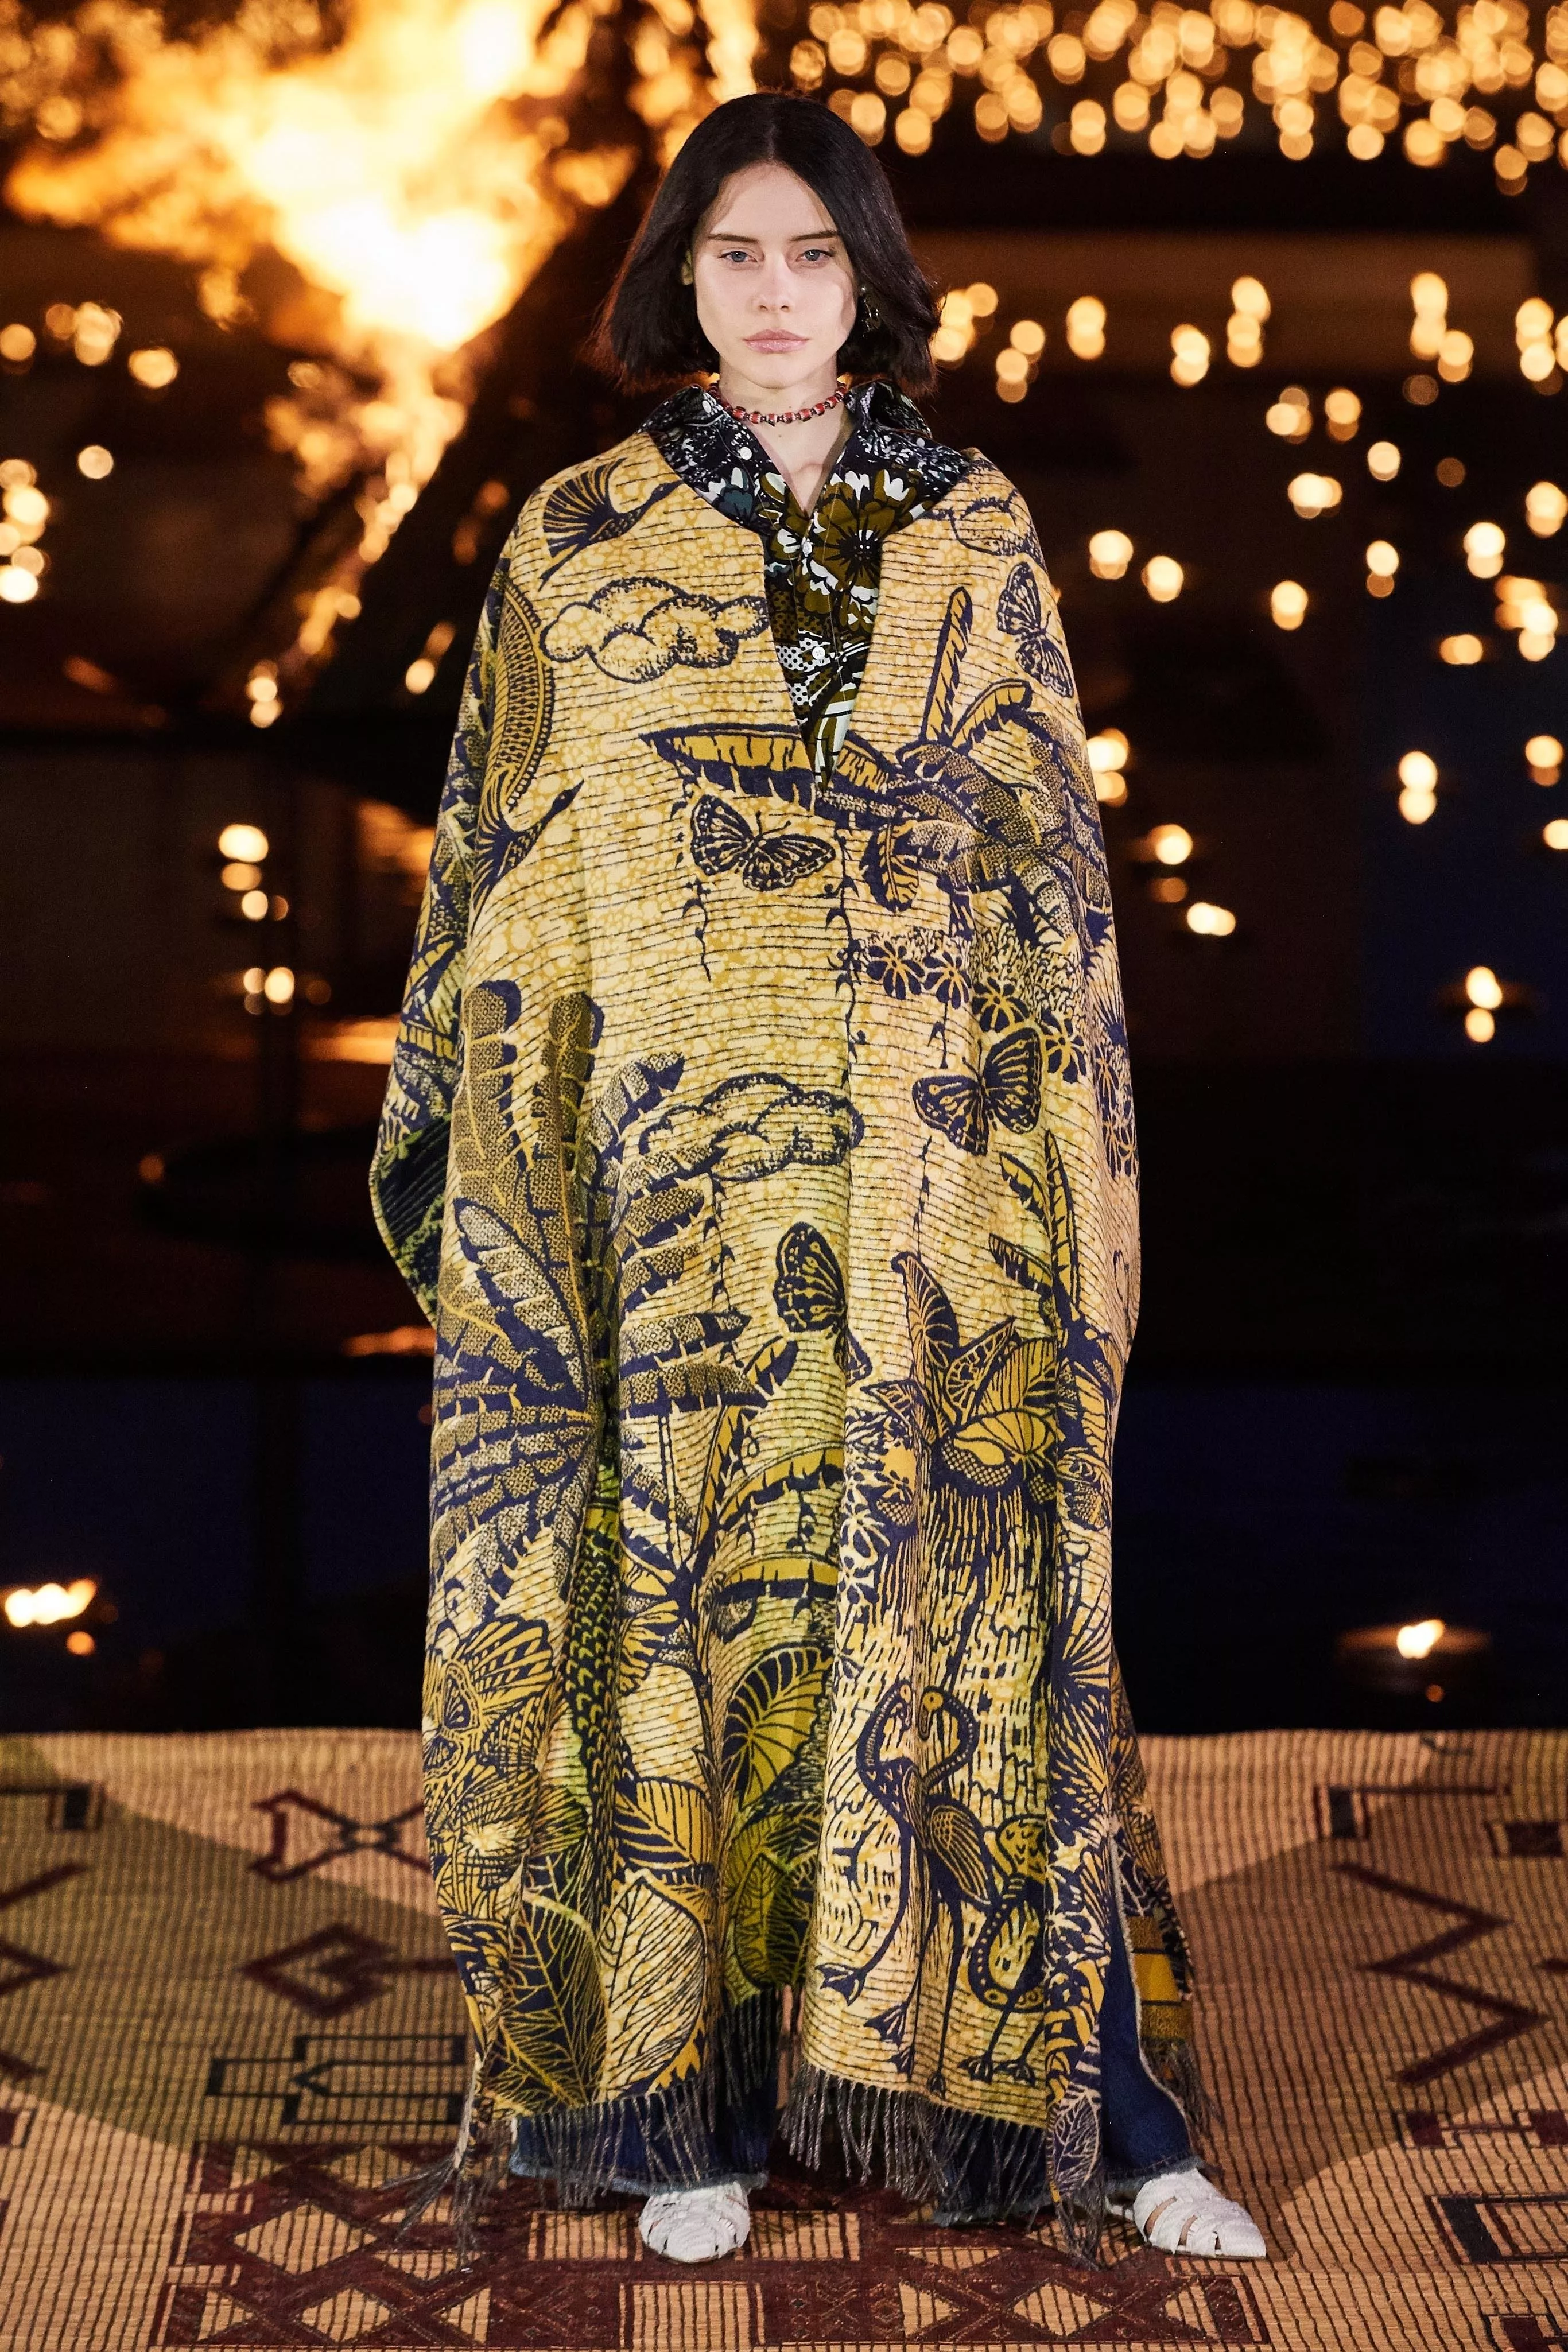 مجموعة Cruise 2020 من Dior: تصاميم مستوحاة من الحرفية المغربية والأفريقية أضاءت مدينة مراكش